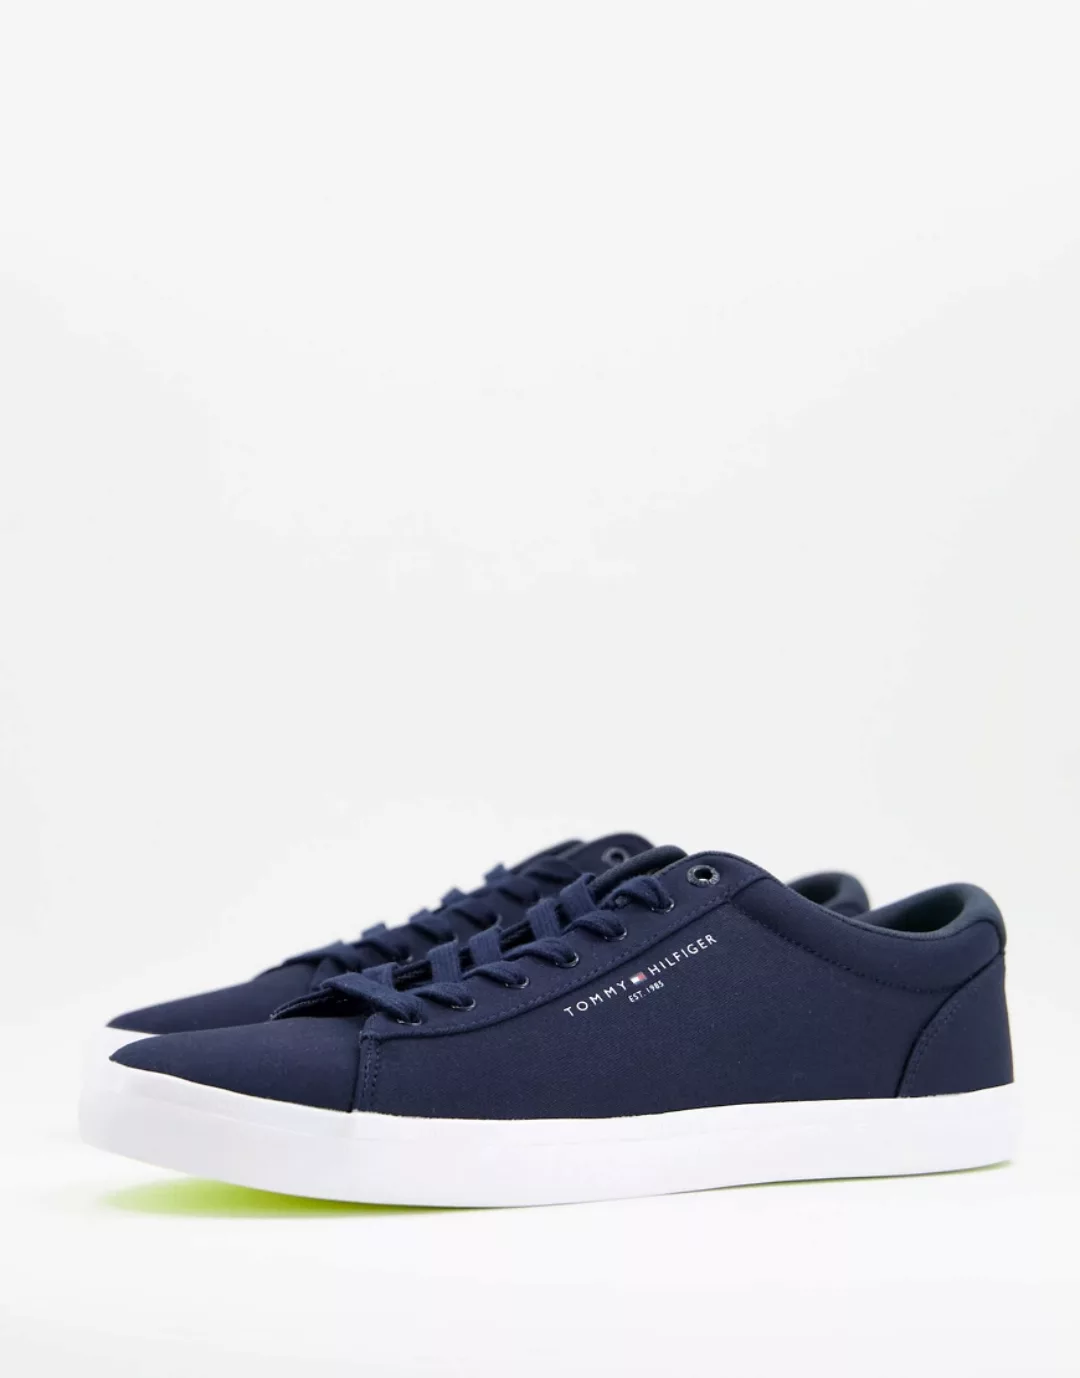 Tommy Hilfiger – Essential – Sneaker in Marineblau mit Textlogo günstig online kaufen